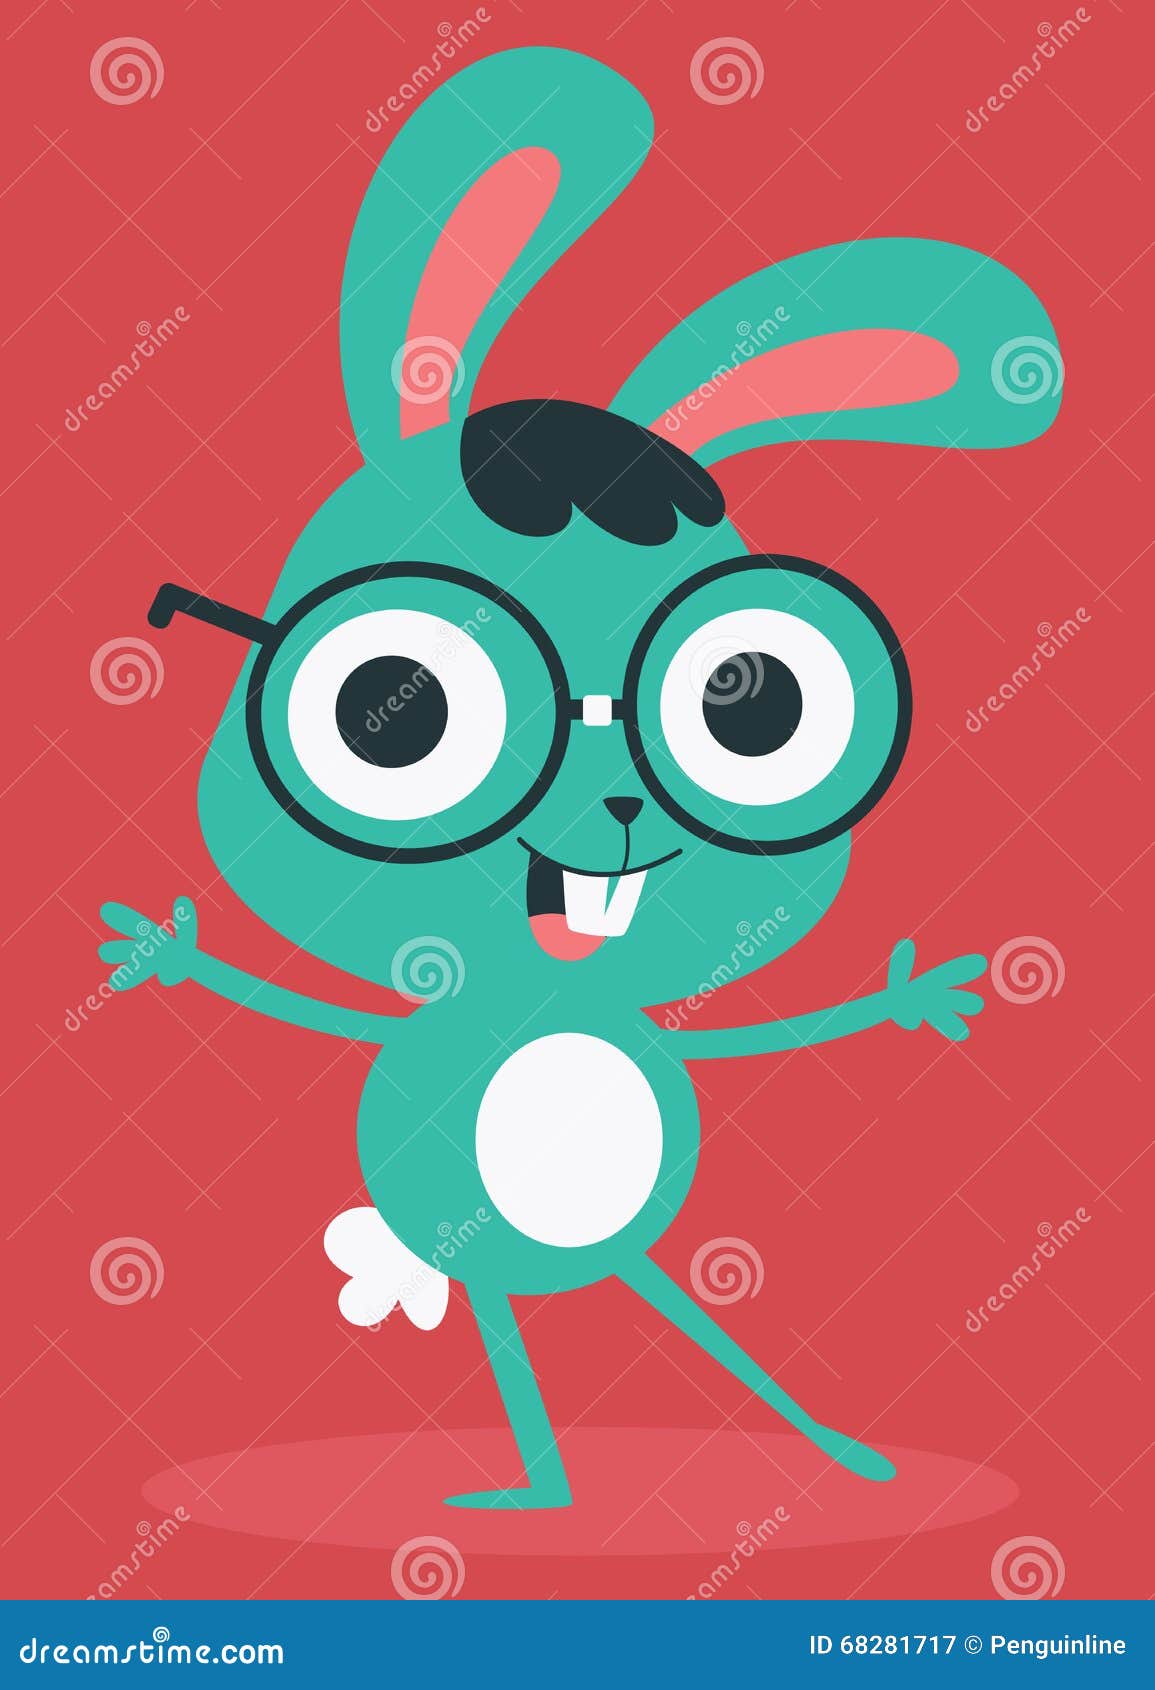 Nerd Bunny Wearing Glasses stock vector. Illustration of glasses - 68281717